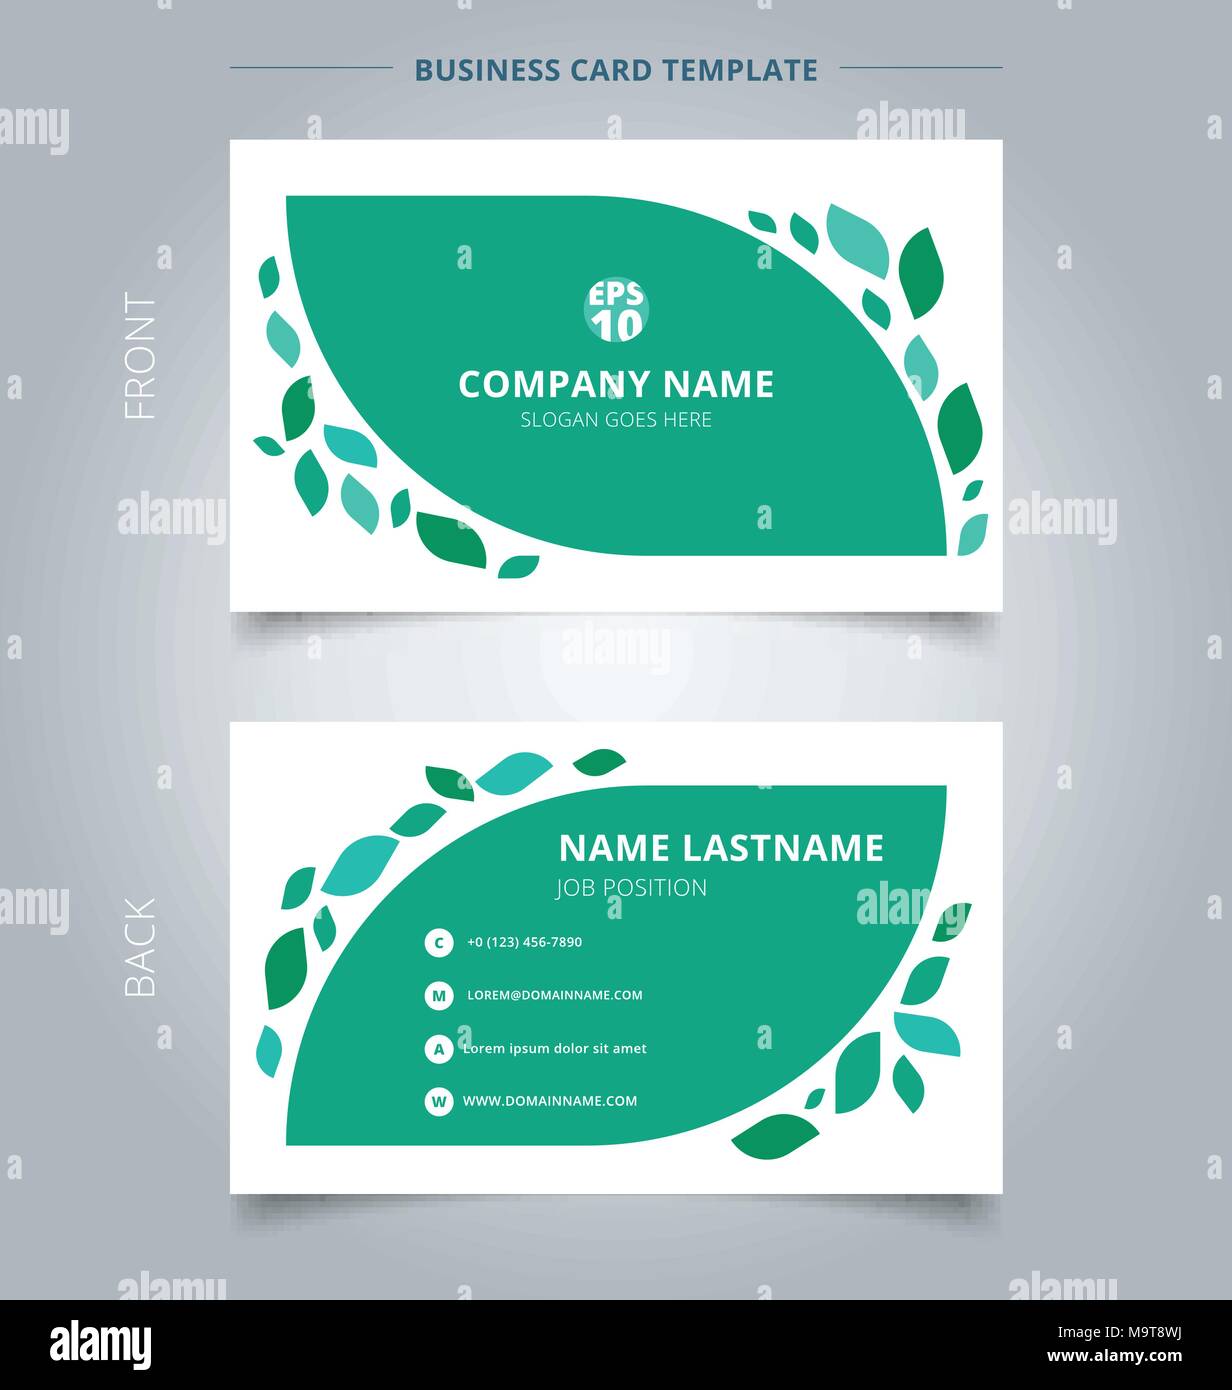 Creative business card et carte graphique nom modèle feuilles vertes sur fond blanc. Concept abstrait et conception graphique de vecteur commercial. Illustration de Vecteur